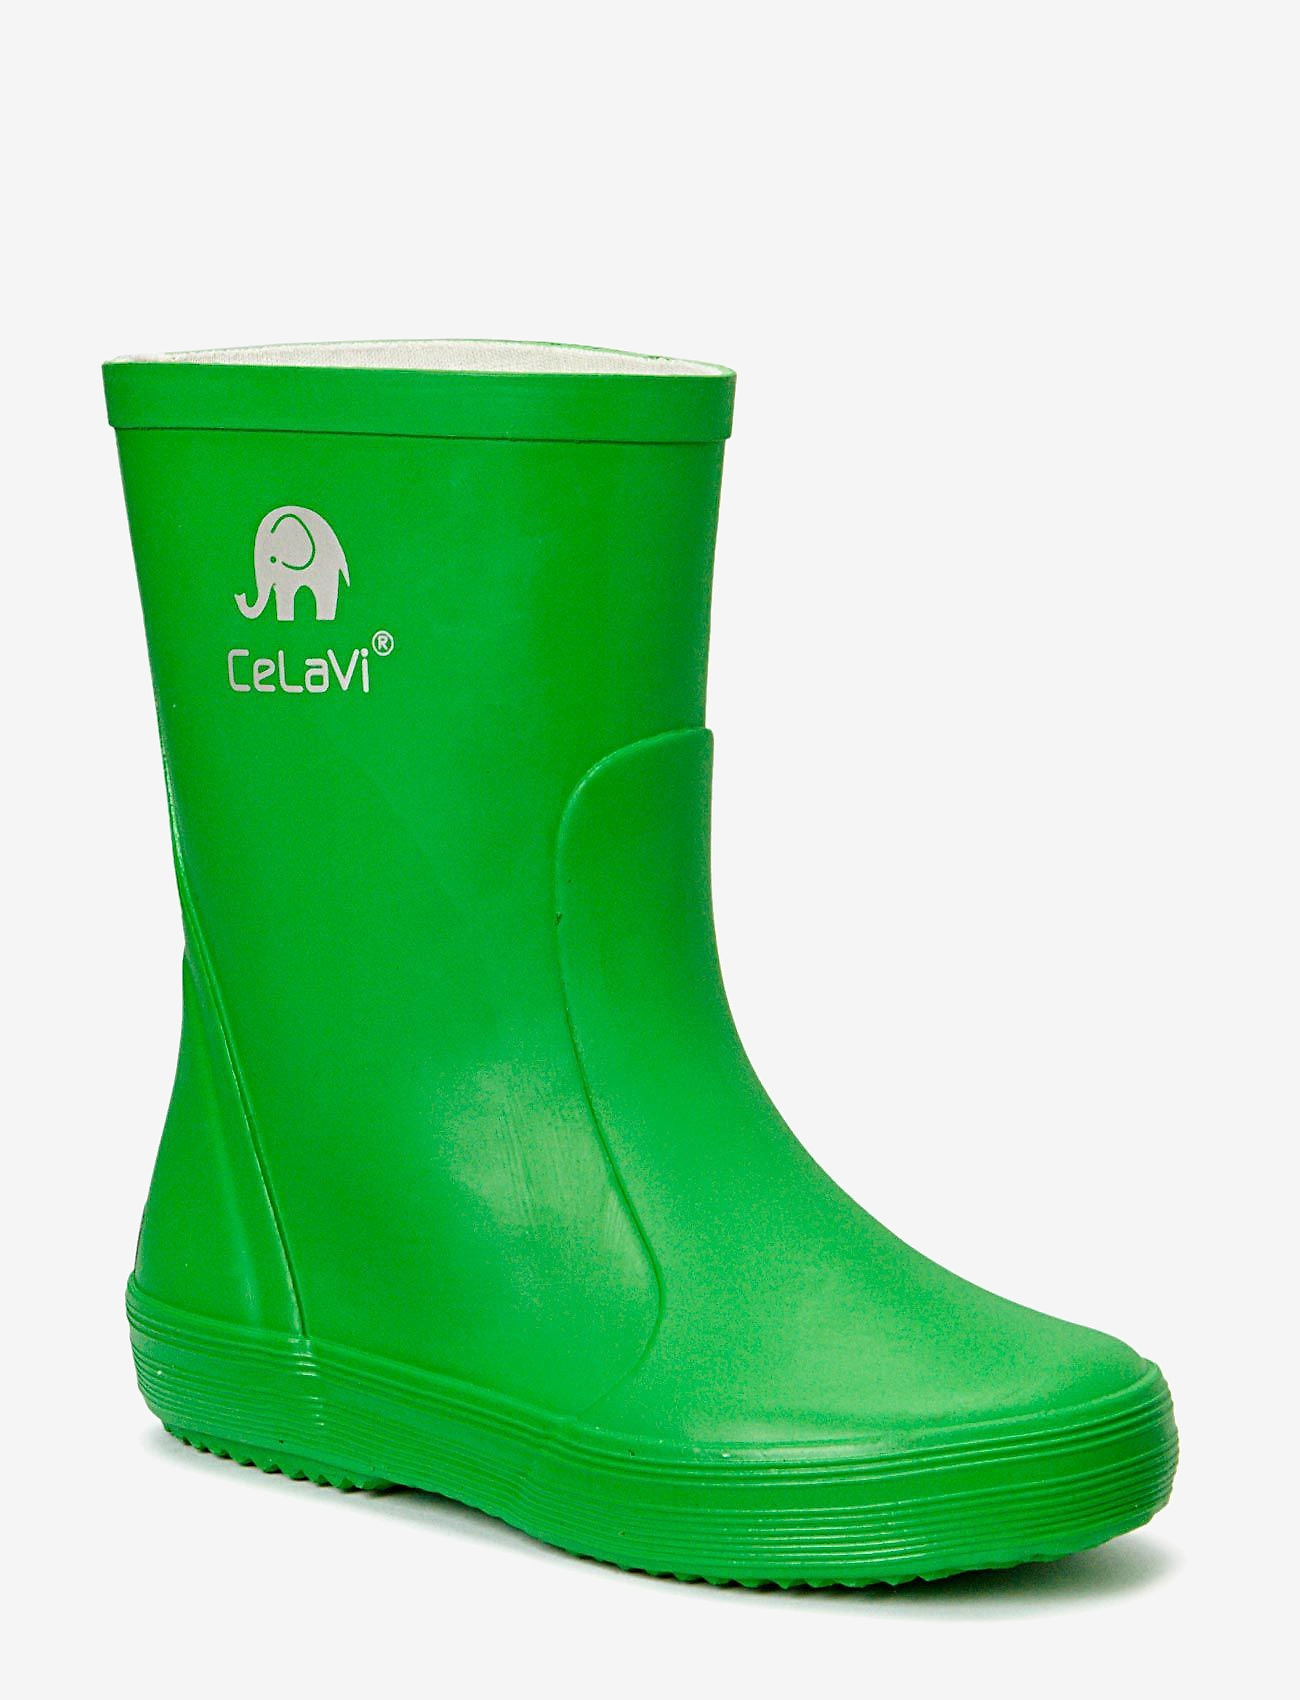 CeLaVi - Basic wellies -solid - gummistøvler uten linjer - green - 0